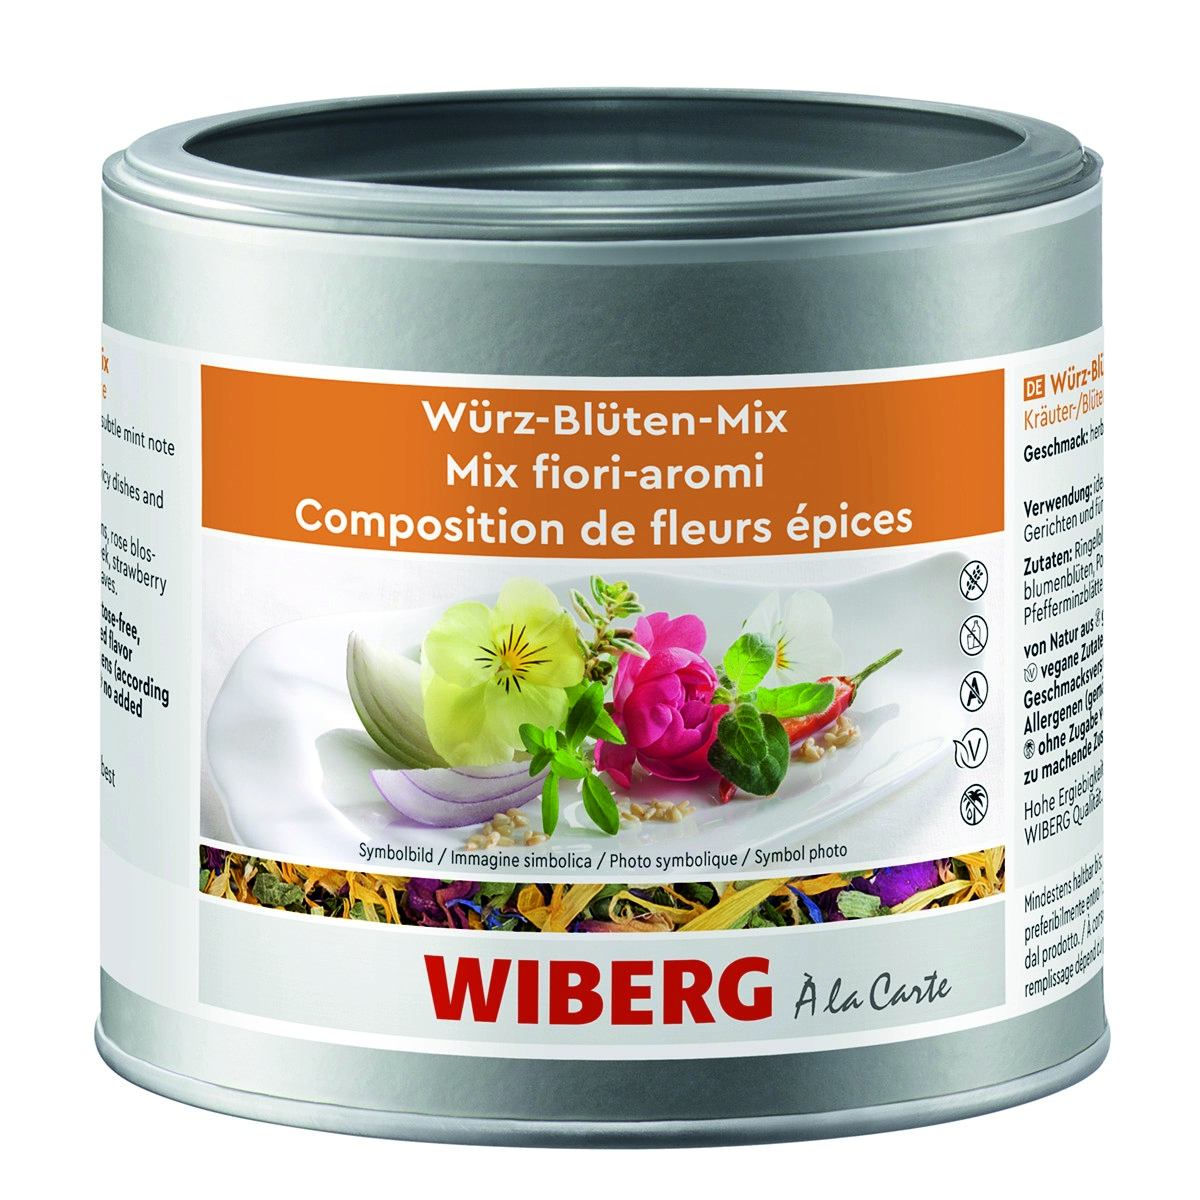 WIBERG Würz-Blüten-Mix